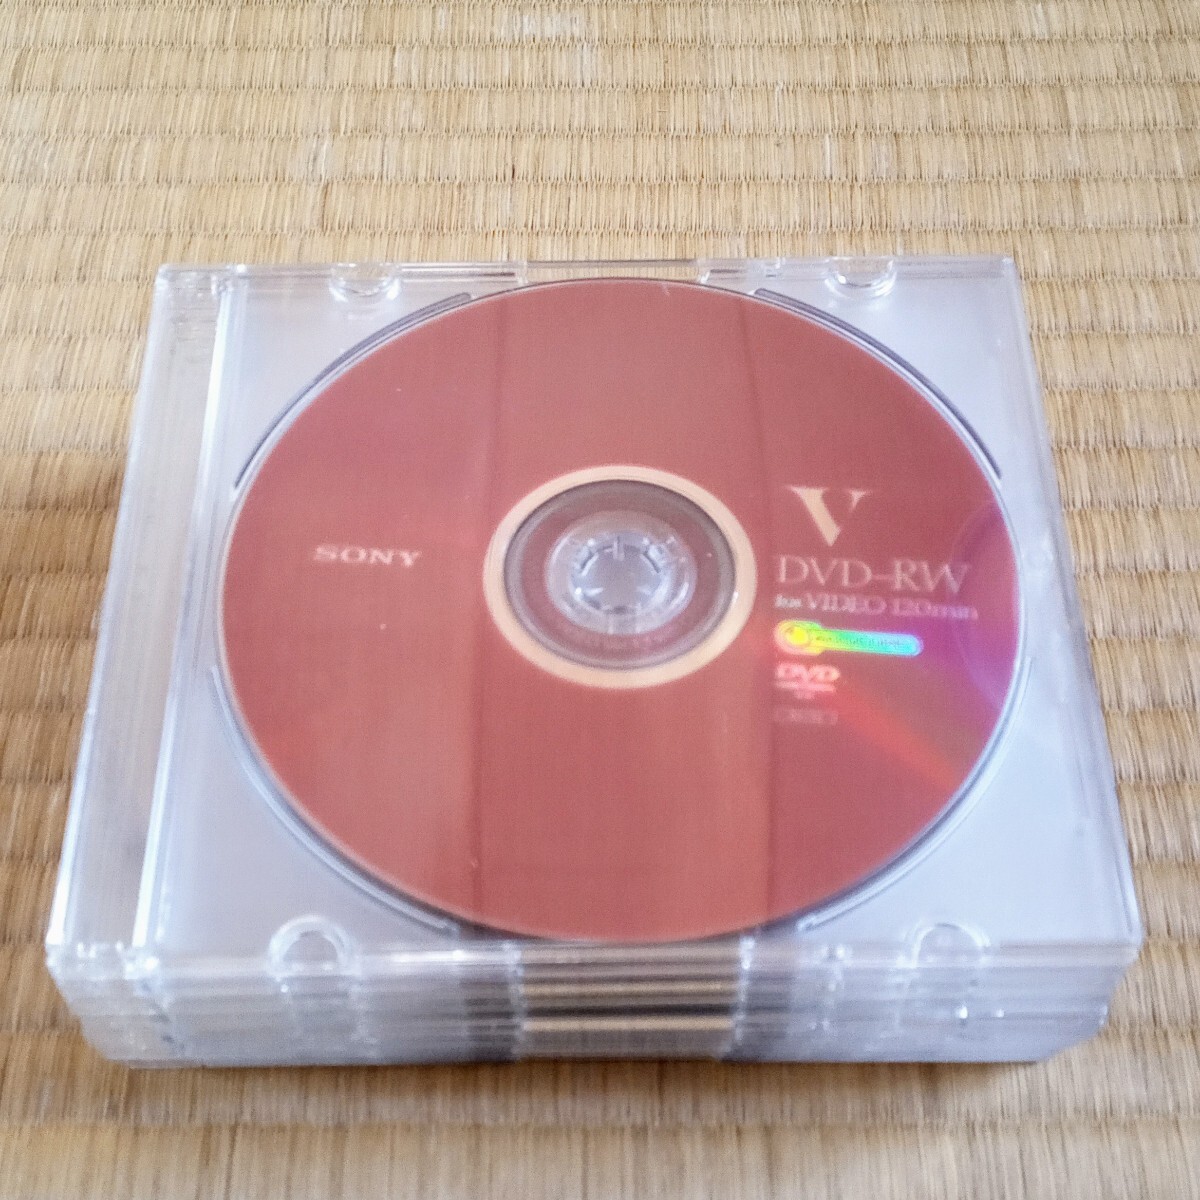 * быстрое решение б/у прекрасный товар * DVD-RW 10 шт. комплект ..... видеозапись для SONY производства Sony цвет диск * такой же один товар. лот есть ( эта 2)